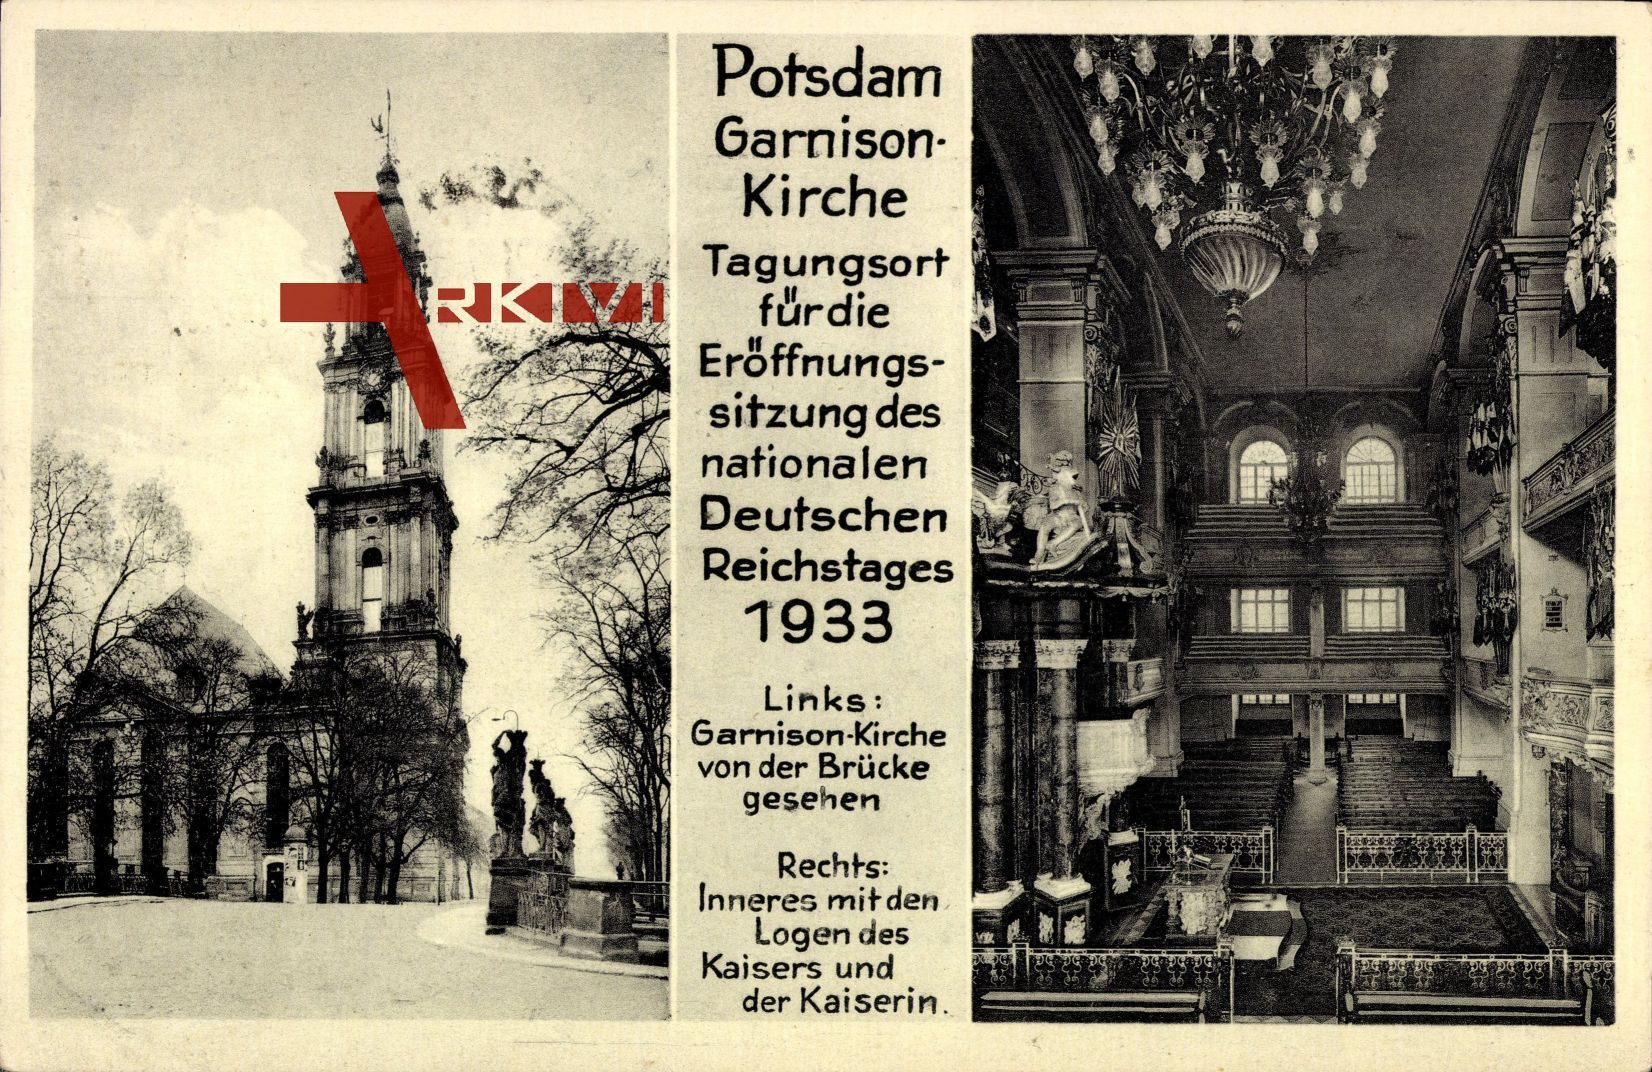 Potsdam, Innenansicht und Aussenansicht der Garnison Kirche, Kaiserloge